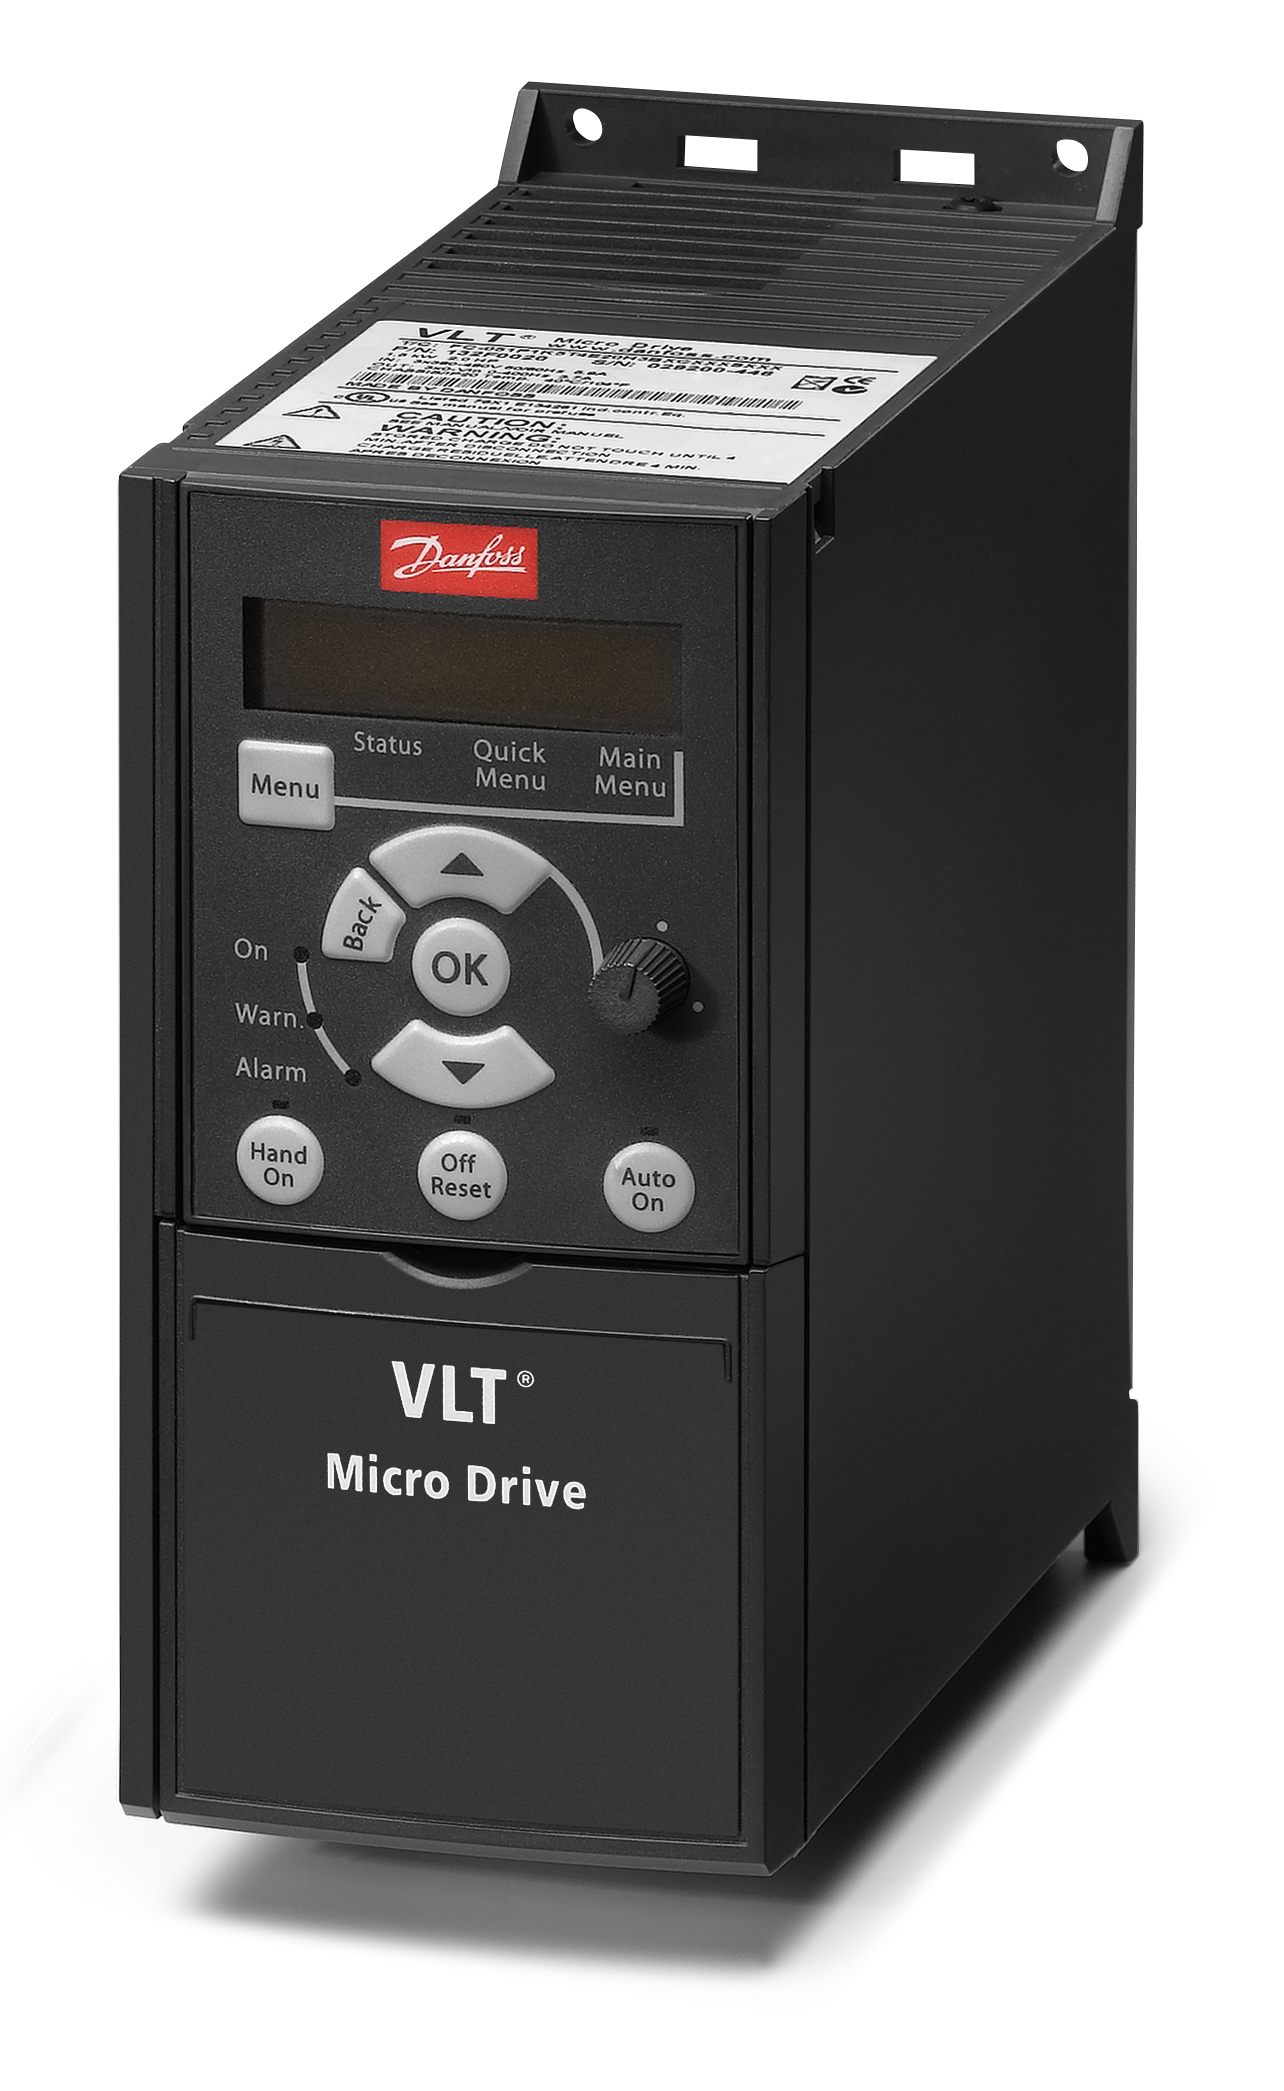 MicroDrive-M2.jpg | VLT Micro Drive FC 51 | официальный сайт Danfoss Россия